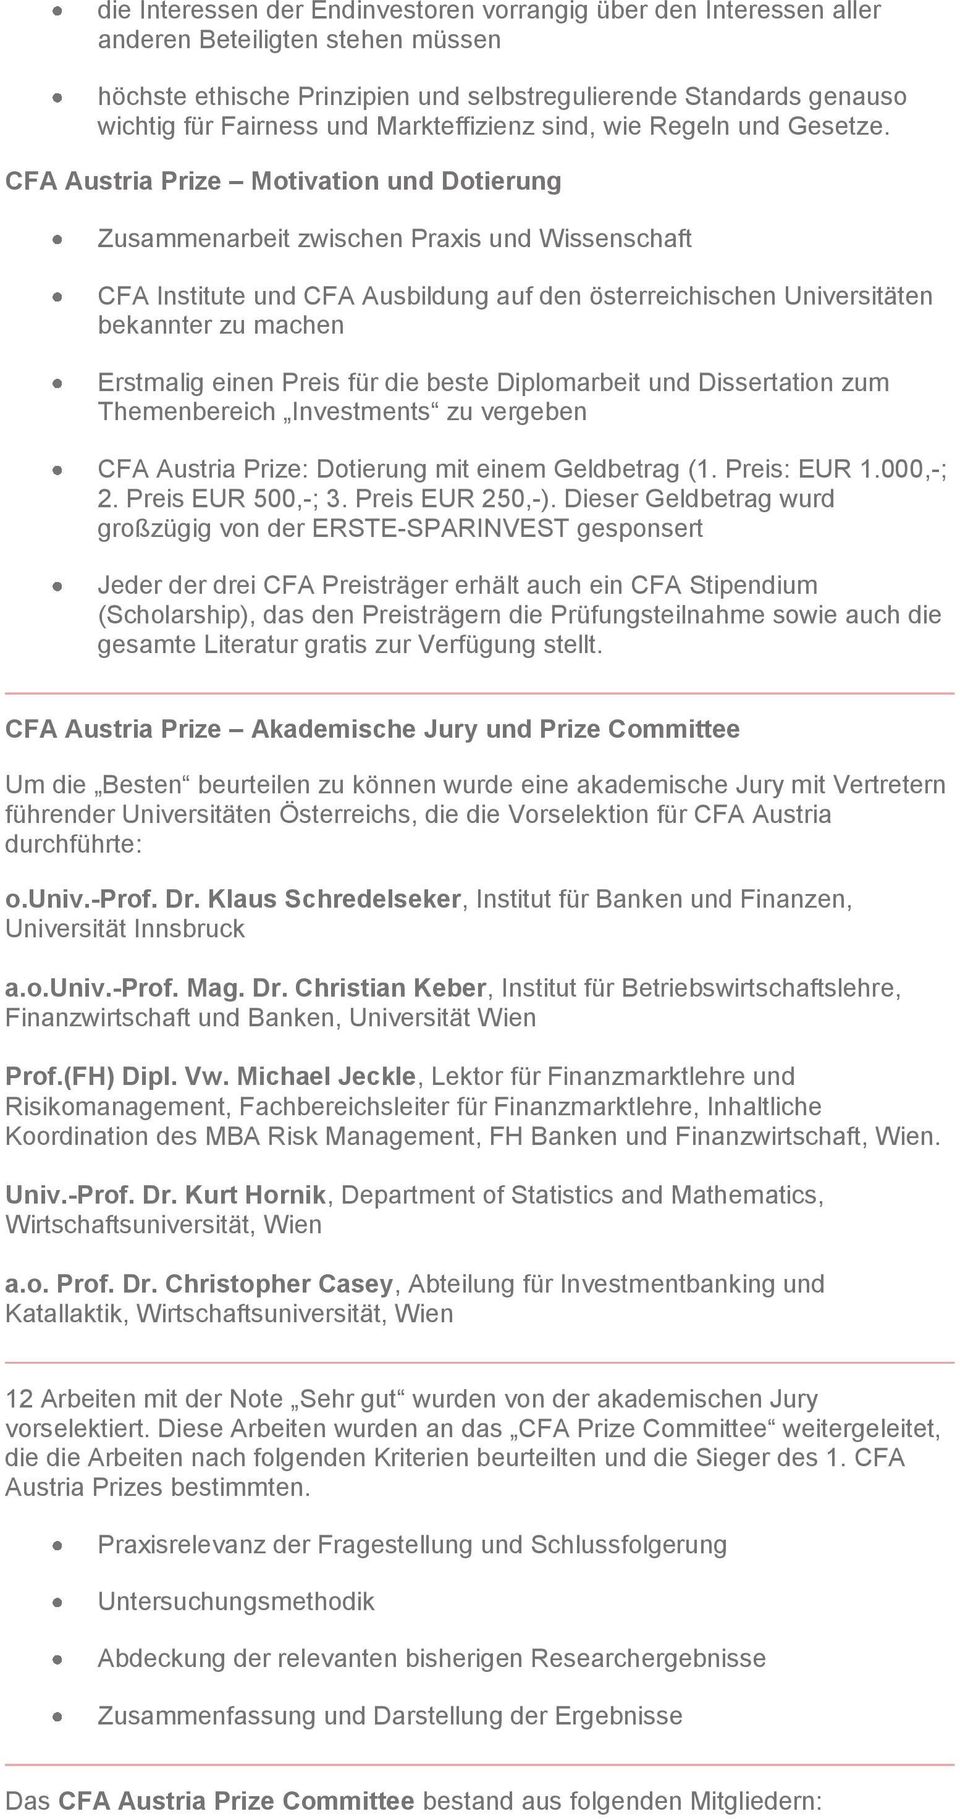 CFA Austria Prize Motivation und Dotierung Zusammenarbeit zwischen Praxis und Wissenschaft CFA Institute und CFA Ausbildung auf den österreichischen Universitäten bekannter zu machen Erstmalig einen